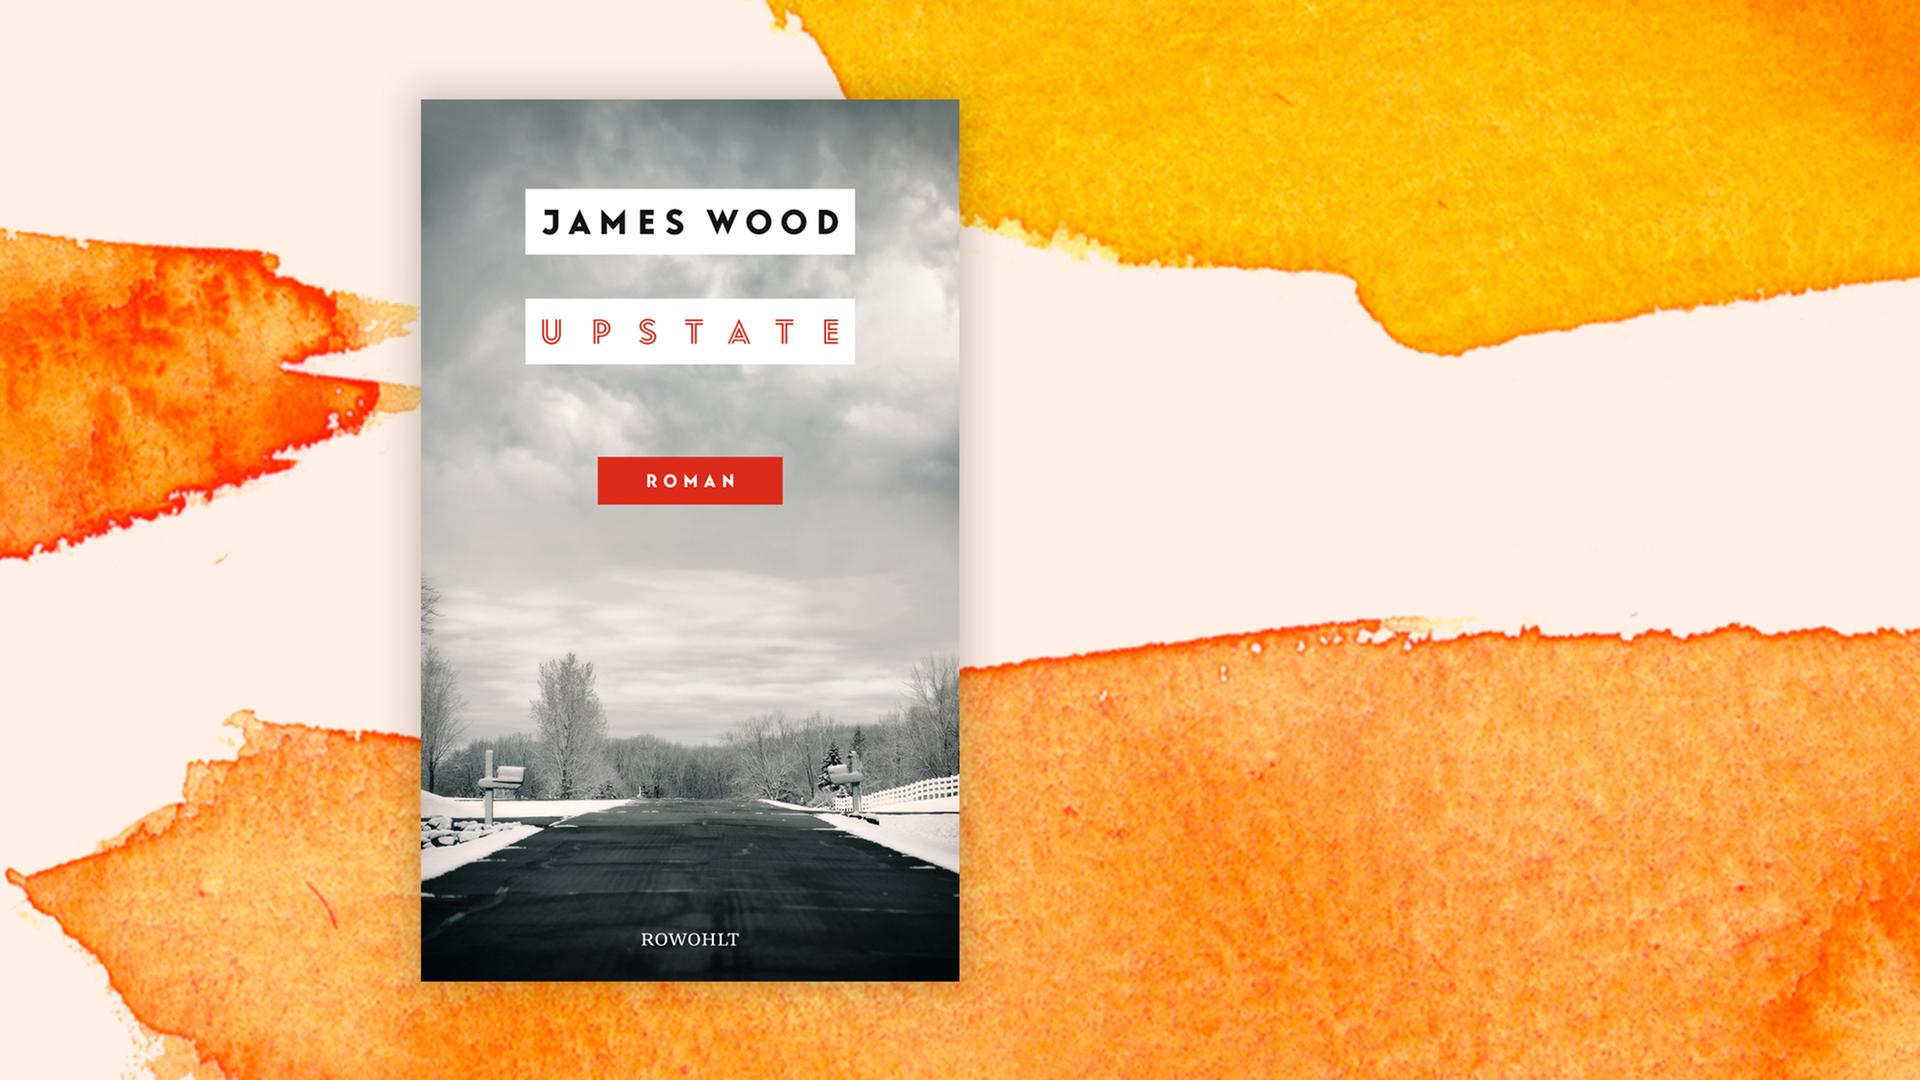 Das Buchcover zum Roman "Upstate" von James Wood.